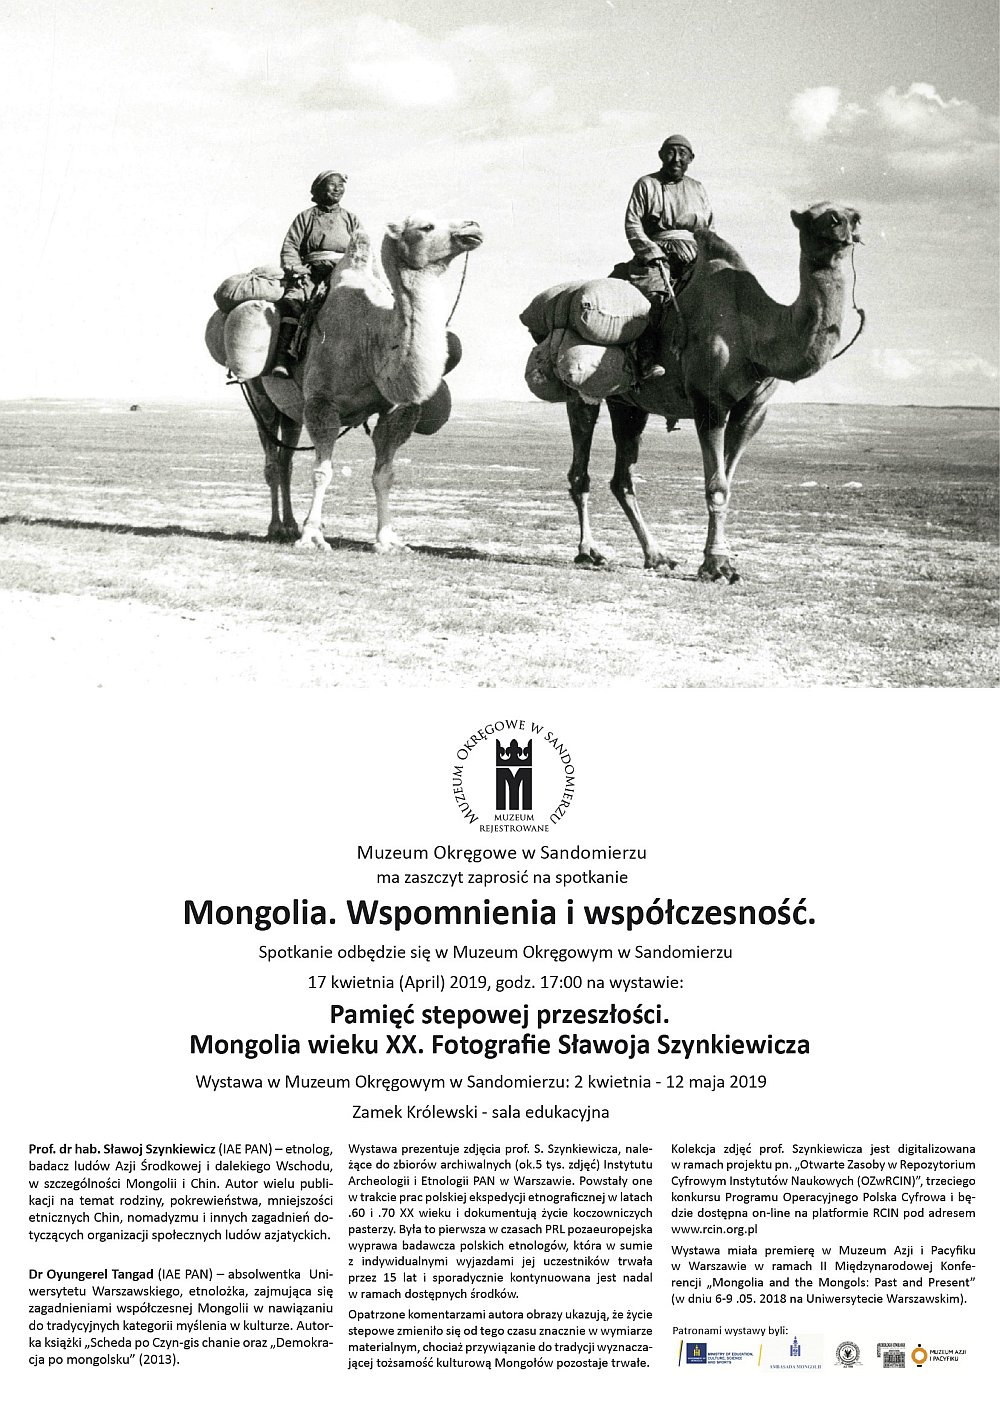 Spotkanie „Mongolia. Wspomnienia i współczesność.”